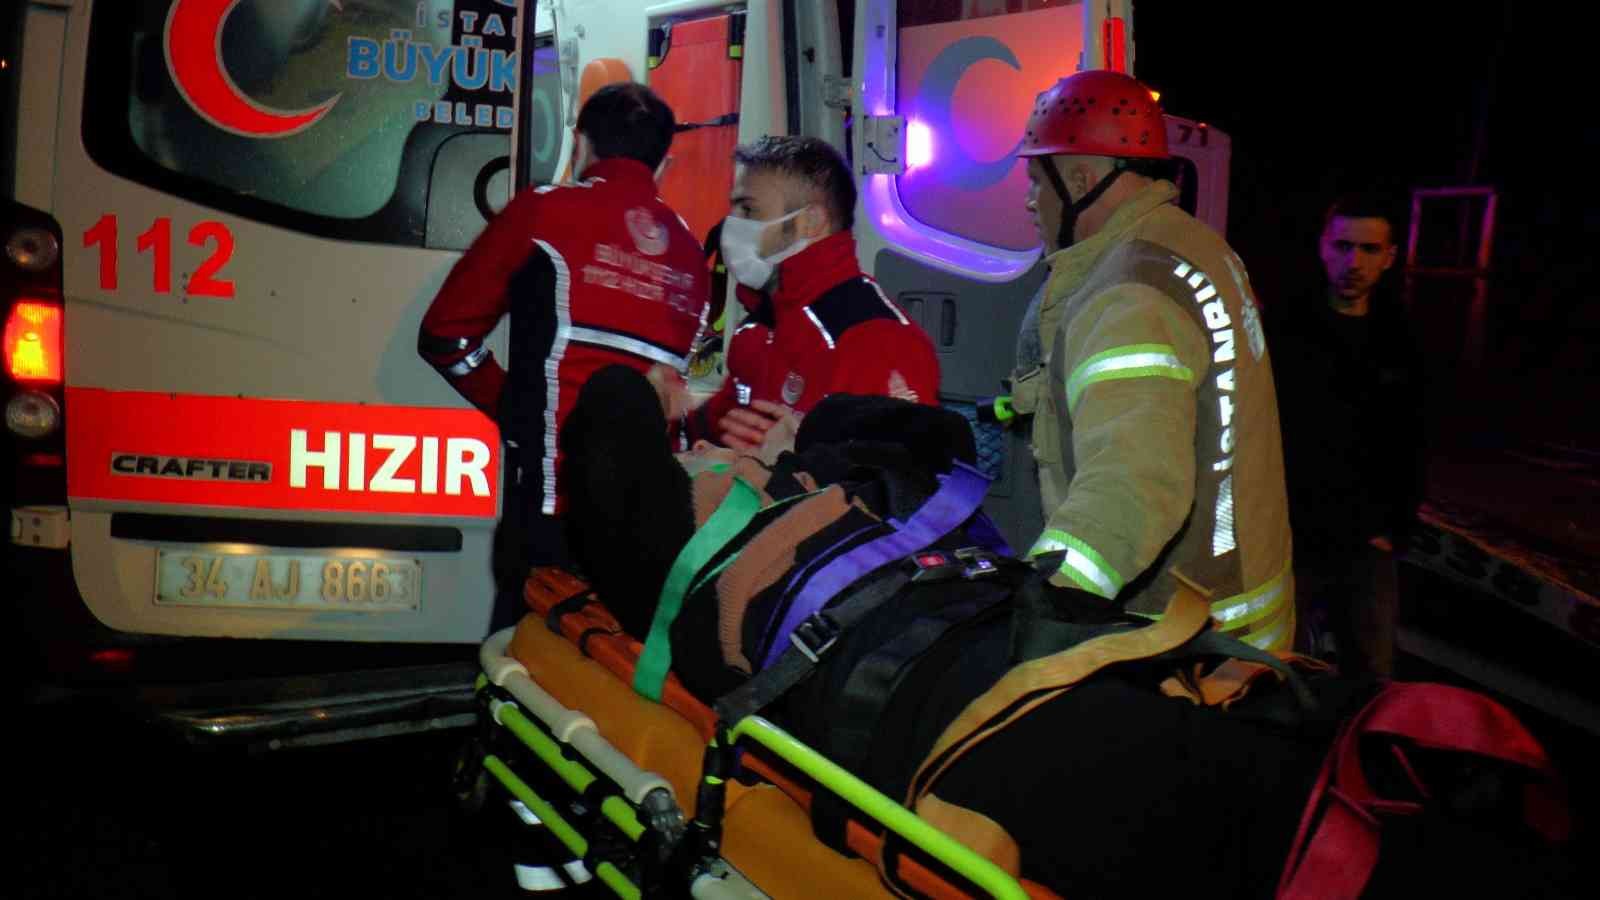 Pendik’te otomobil 50 metreden uçtu, anne ve kızı yaralandı #istanbul